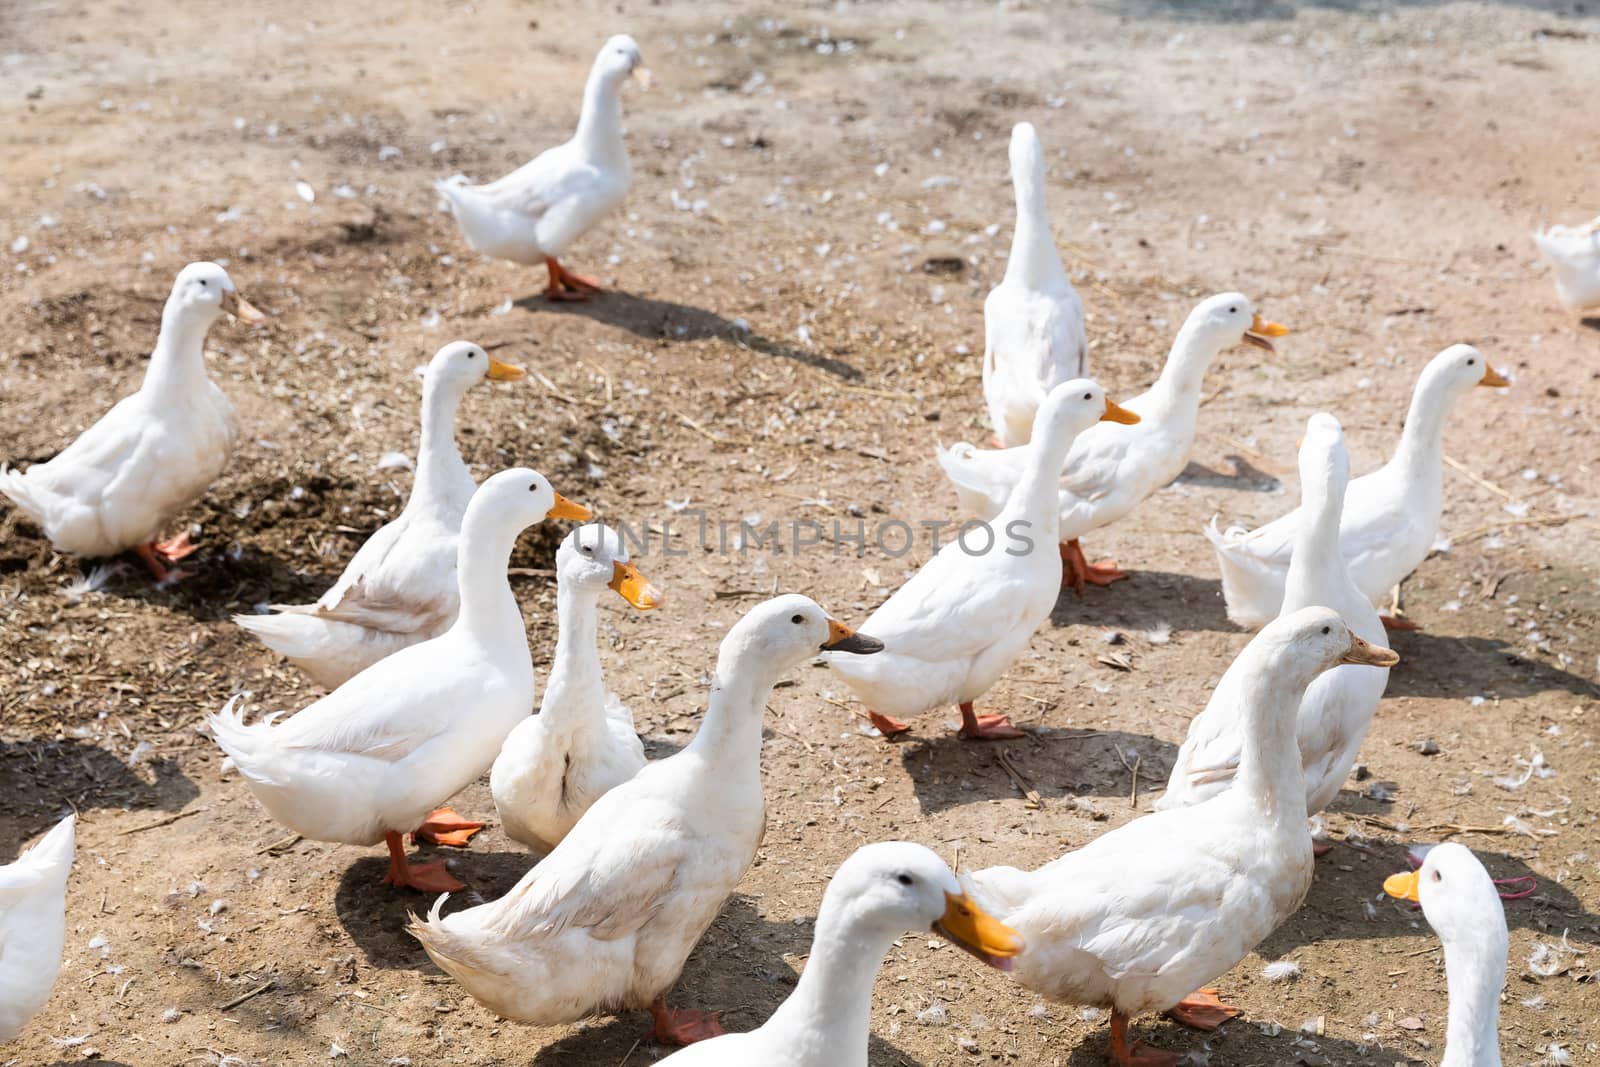 Free range duck in farm by smuay